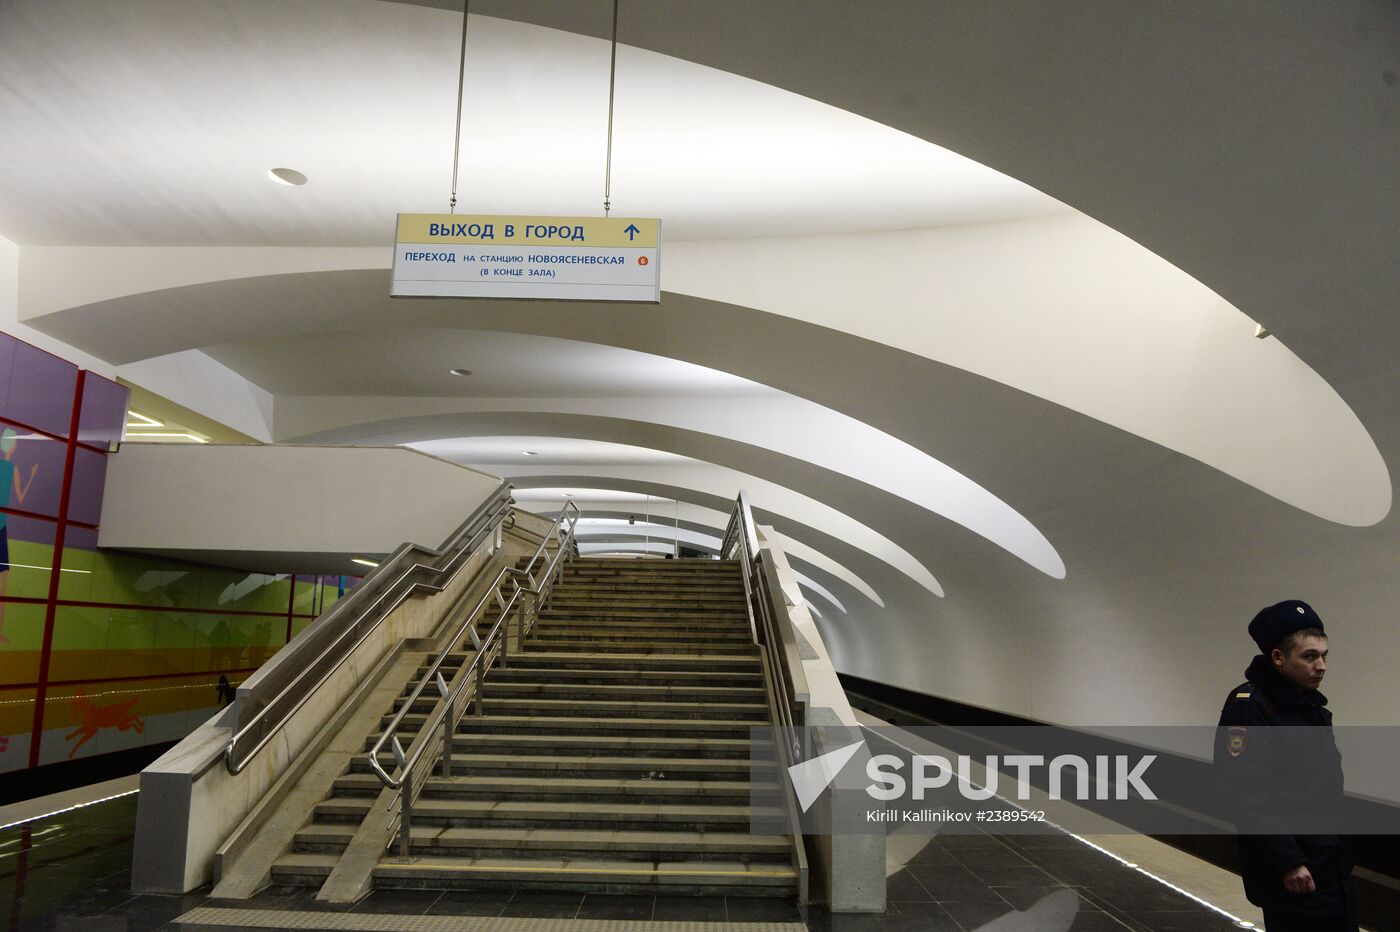 New metro stations, Lesoparkovaya and Bitsevsky Park